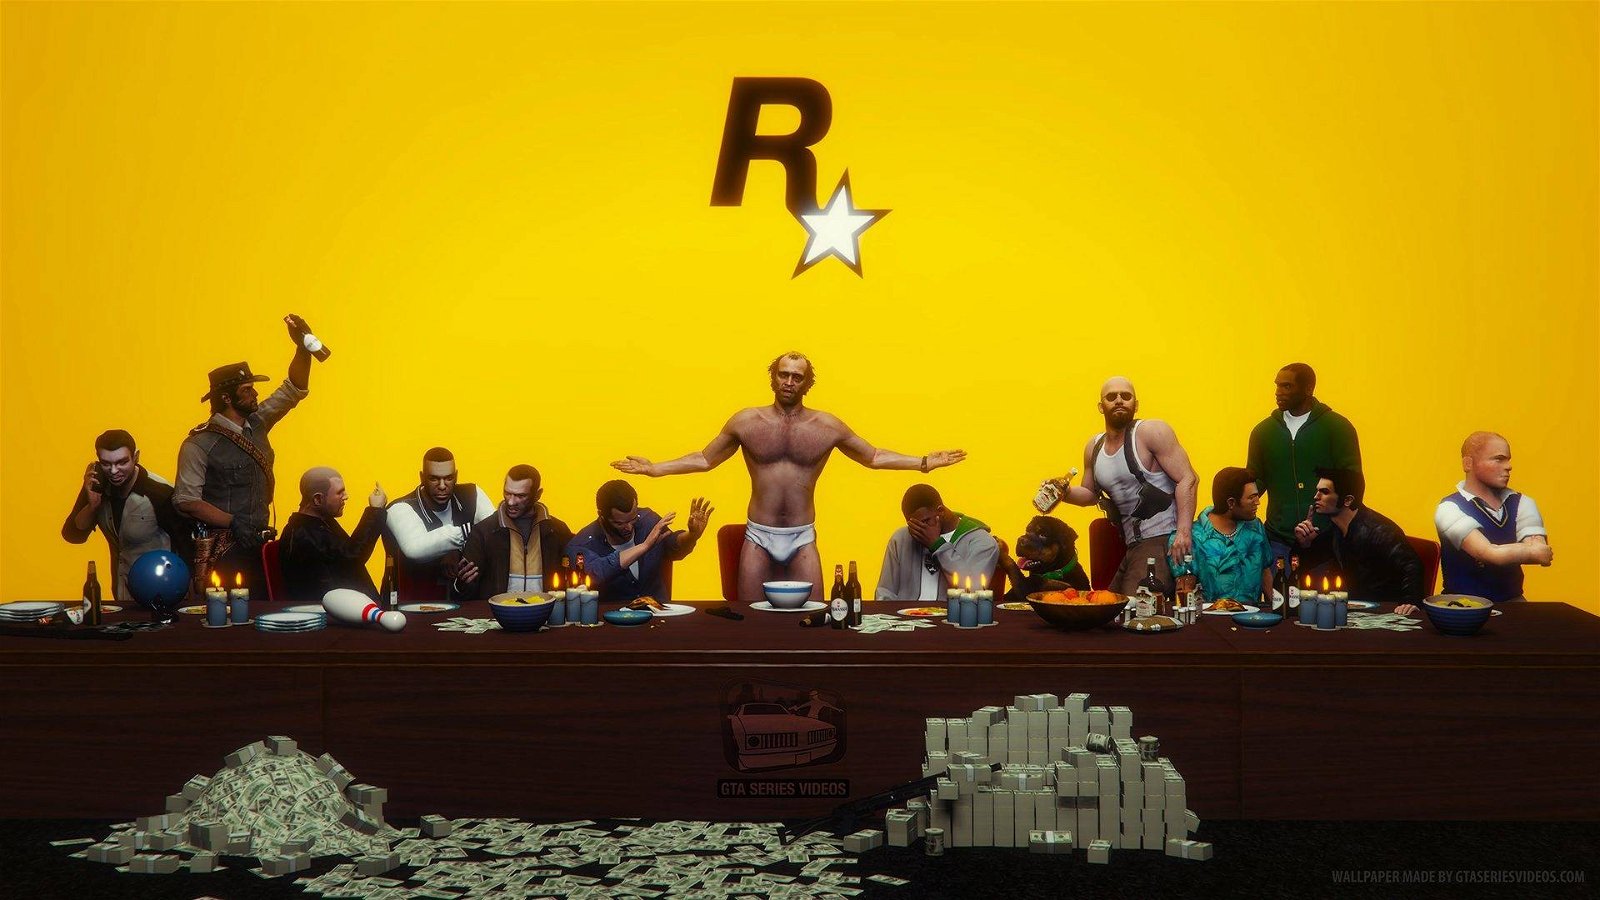 Immagine di Rockstar Games: Take-Two si ritiene ottimista per il futuro dello studio